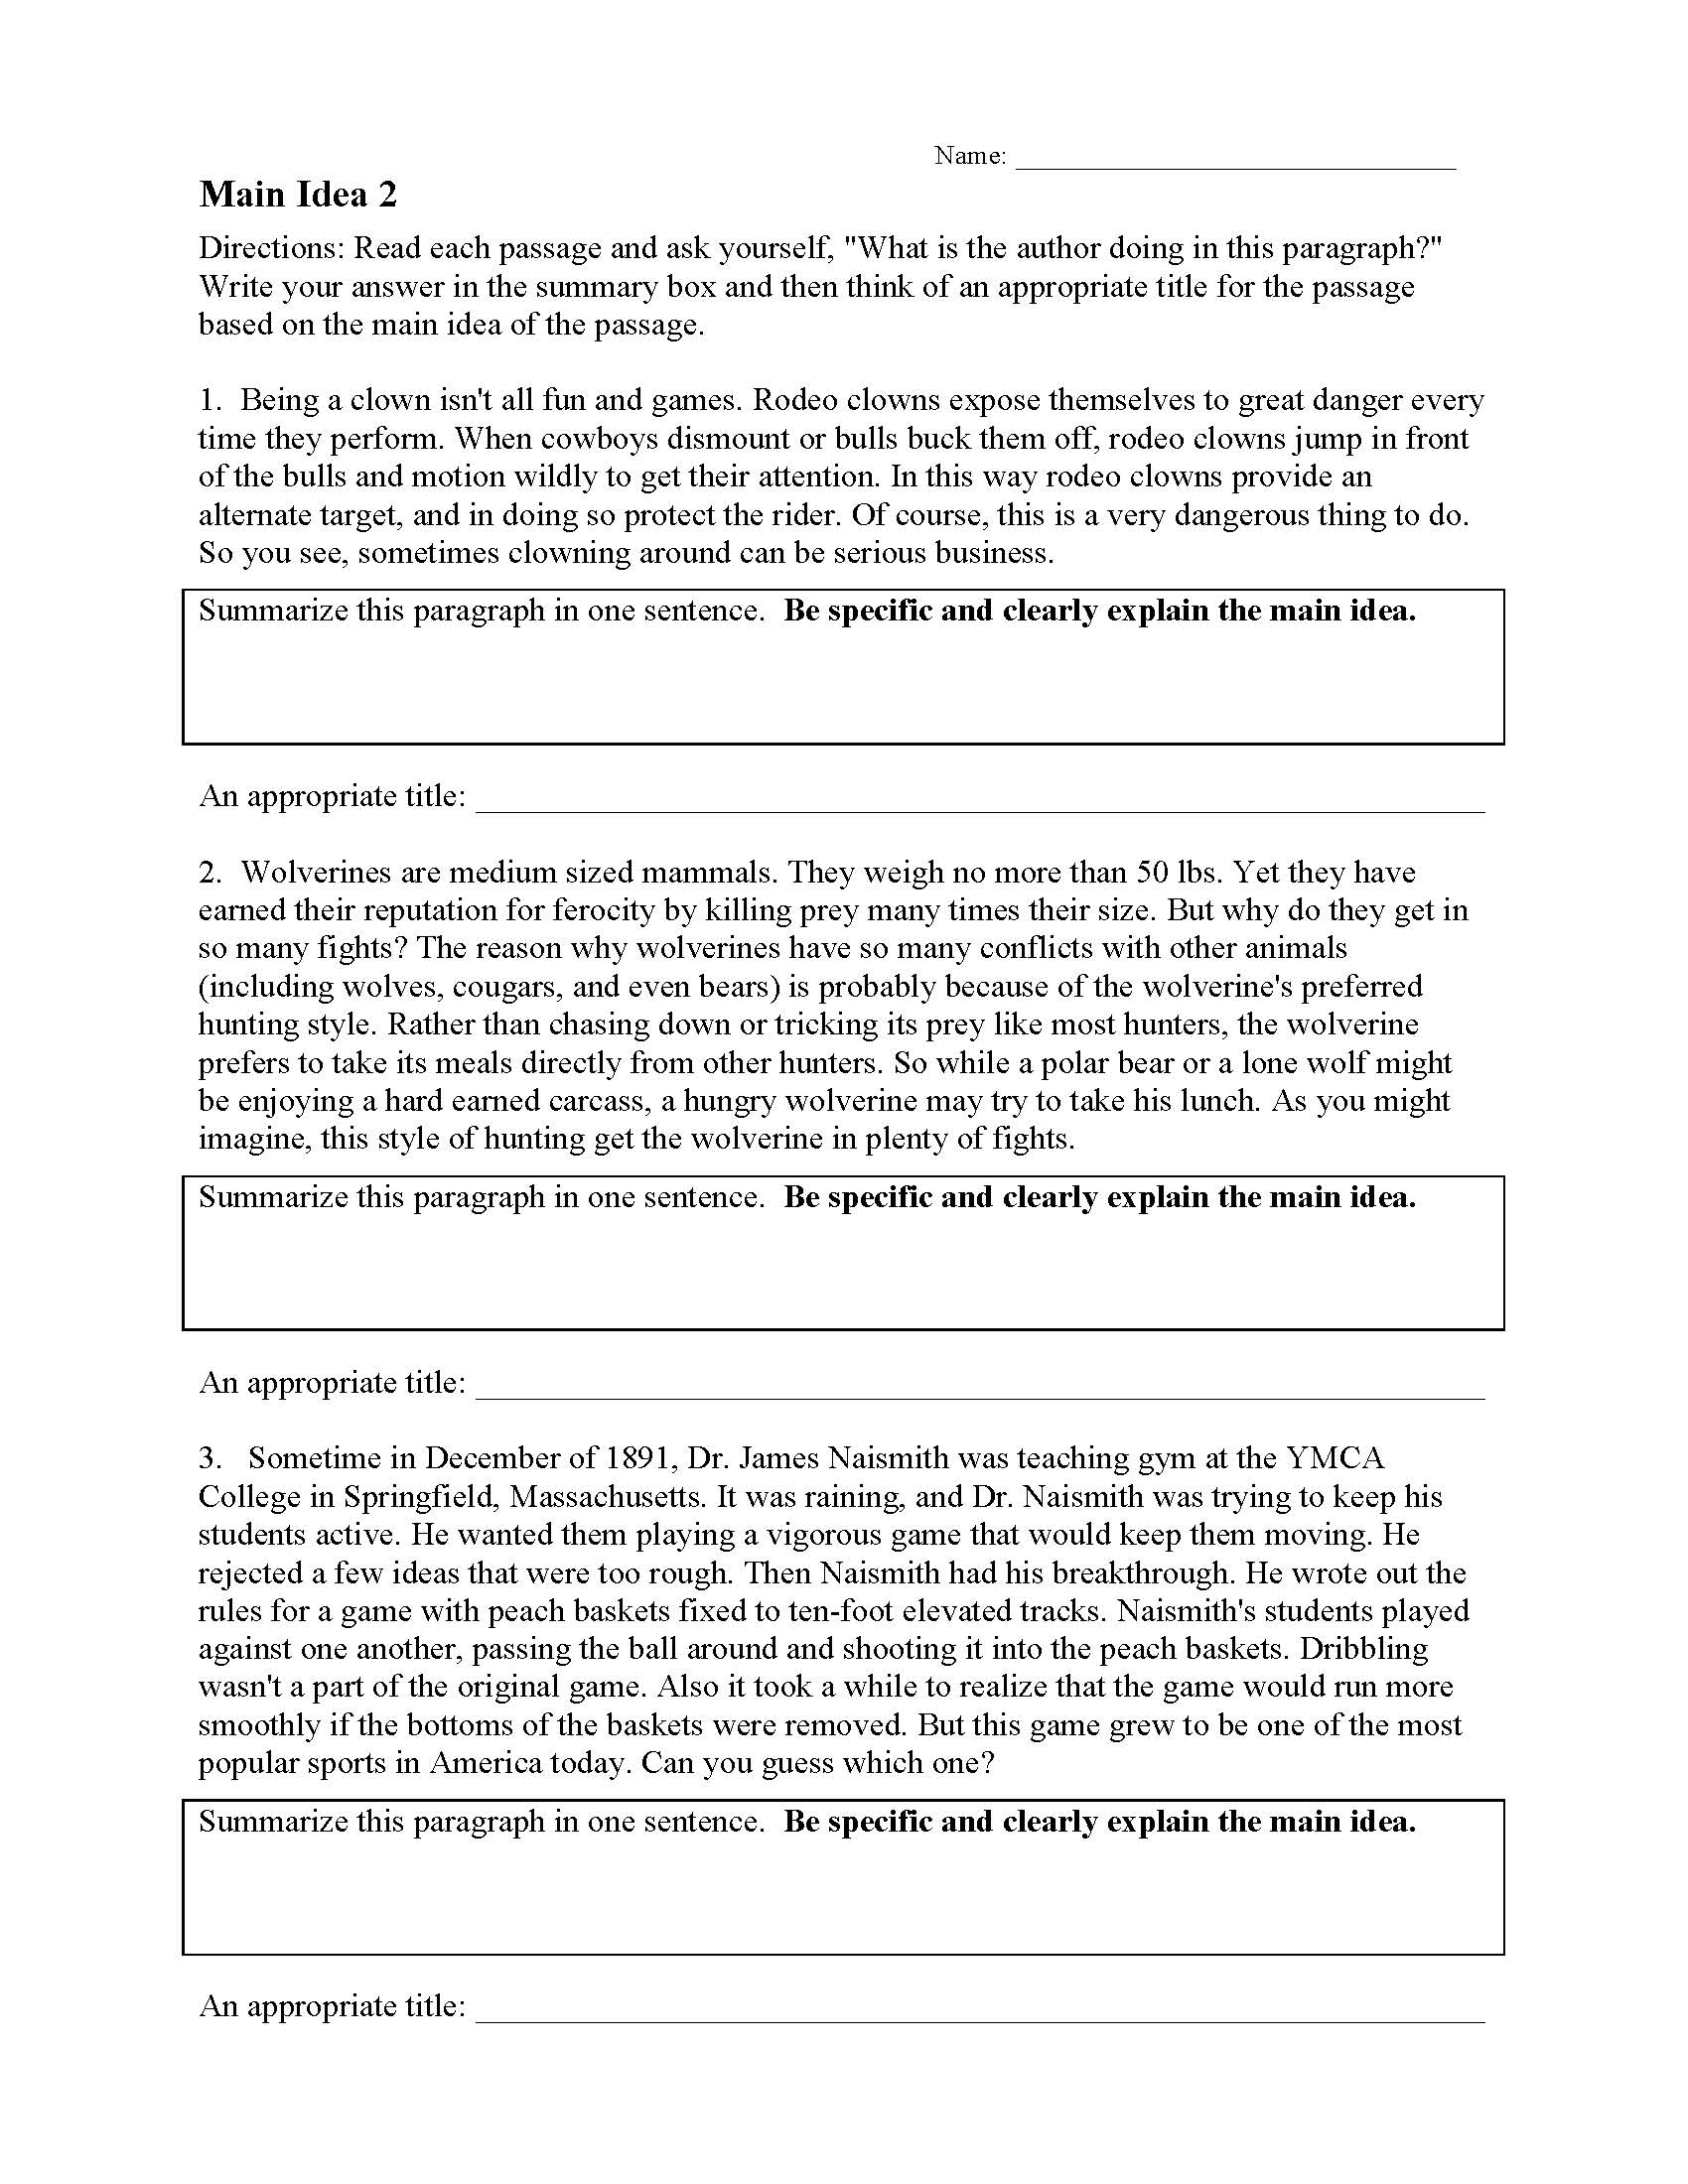 Main Idea Worksheets  Ereading Worksheets Intended For Main Idea Worksheet 5